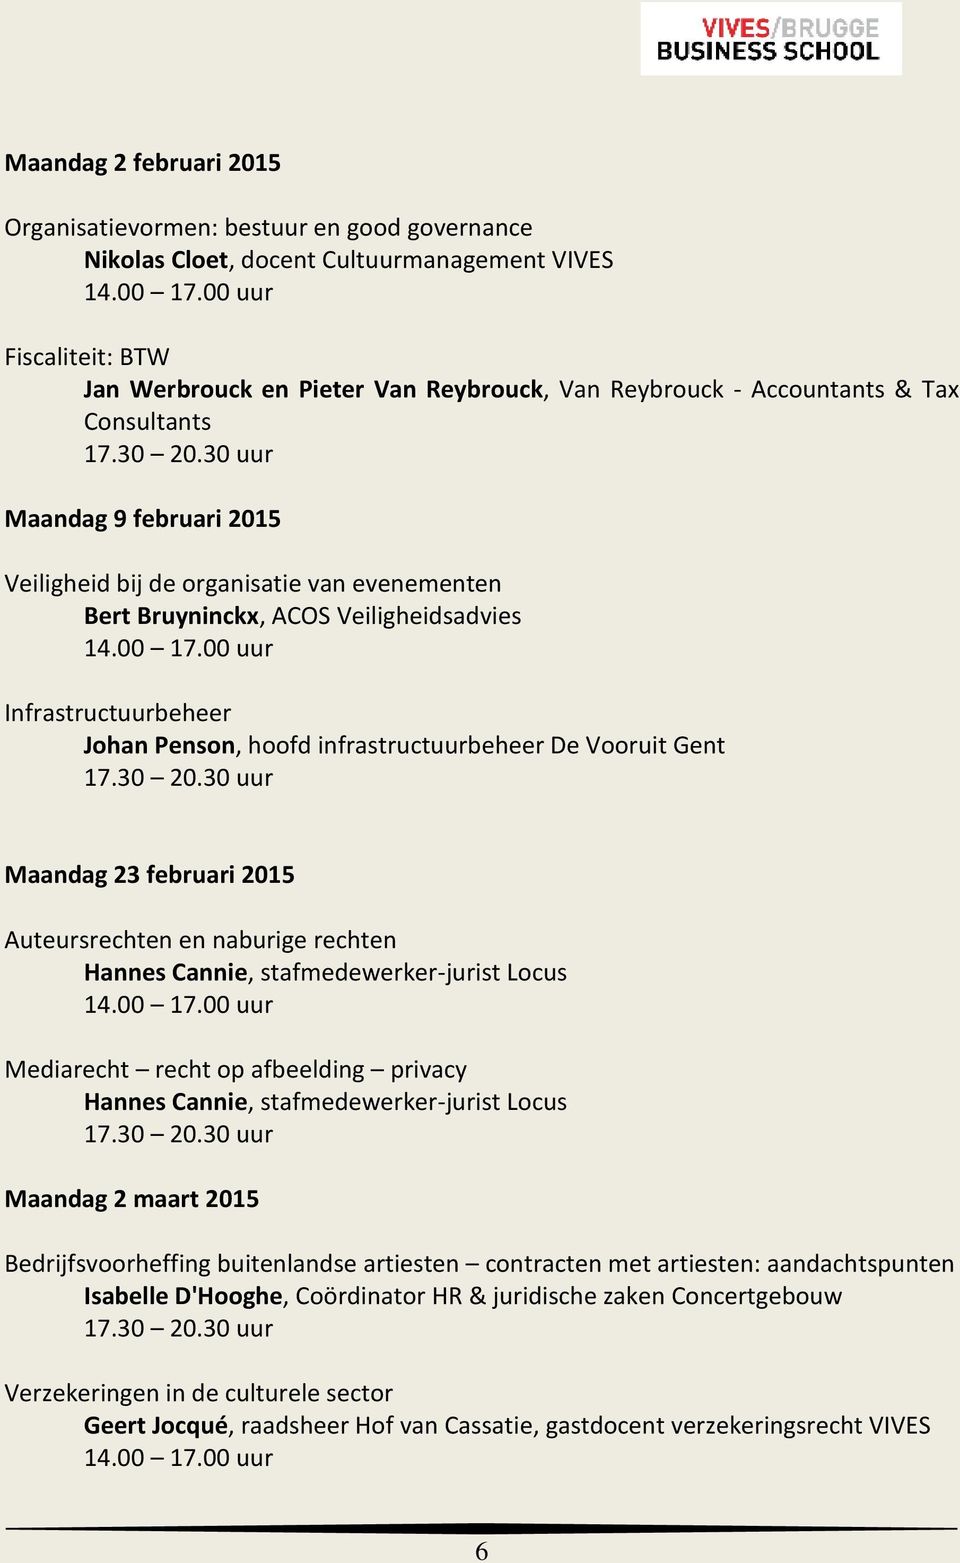 Vooruit Gent Maandag 23 februari 2015 Auteursrechten en naburige rechten Hannes Cannie, stafmedewerker-jurist Locus Mediarecht recht op afbeelding privacy Hannes Cannie, stafmedewerker-jurist Locus